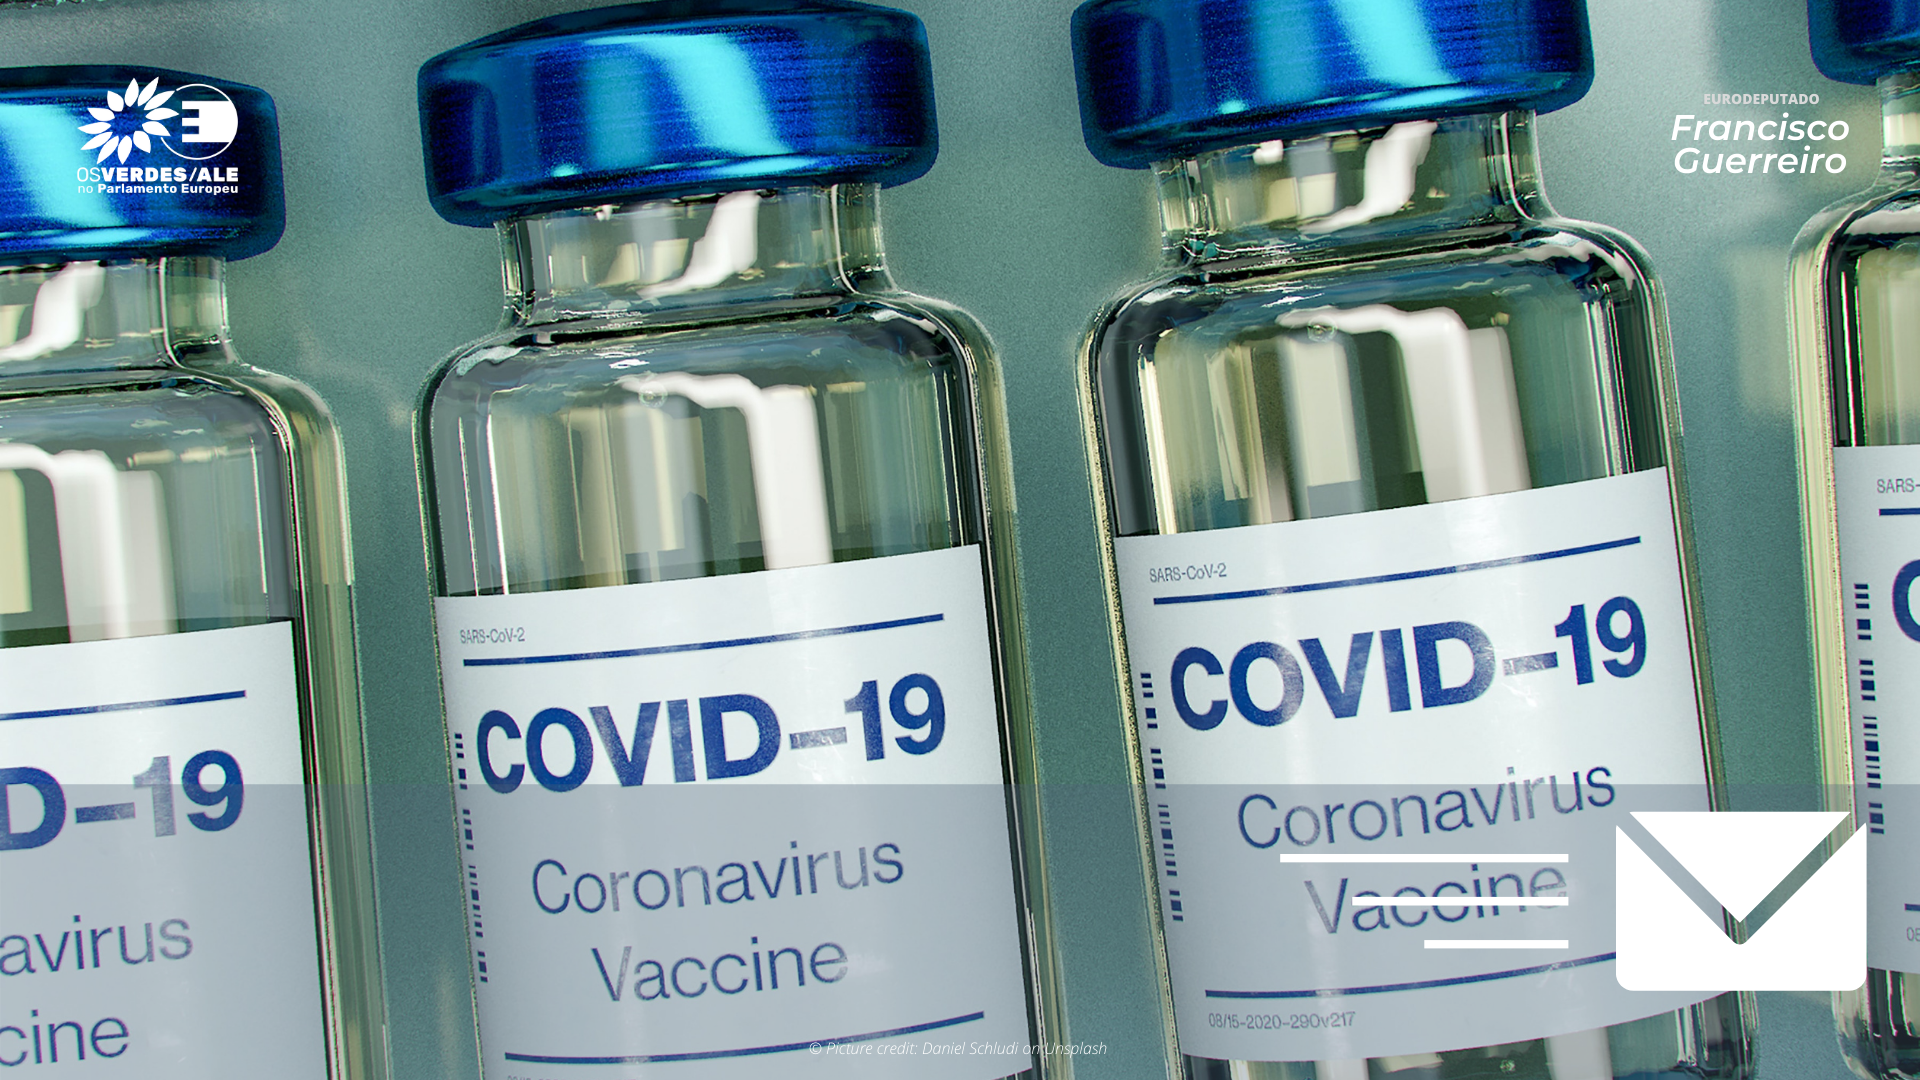 Membros do Parlamento Europeu pedem que UE assegure vacinação à Covid-19 em massa